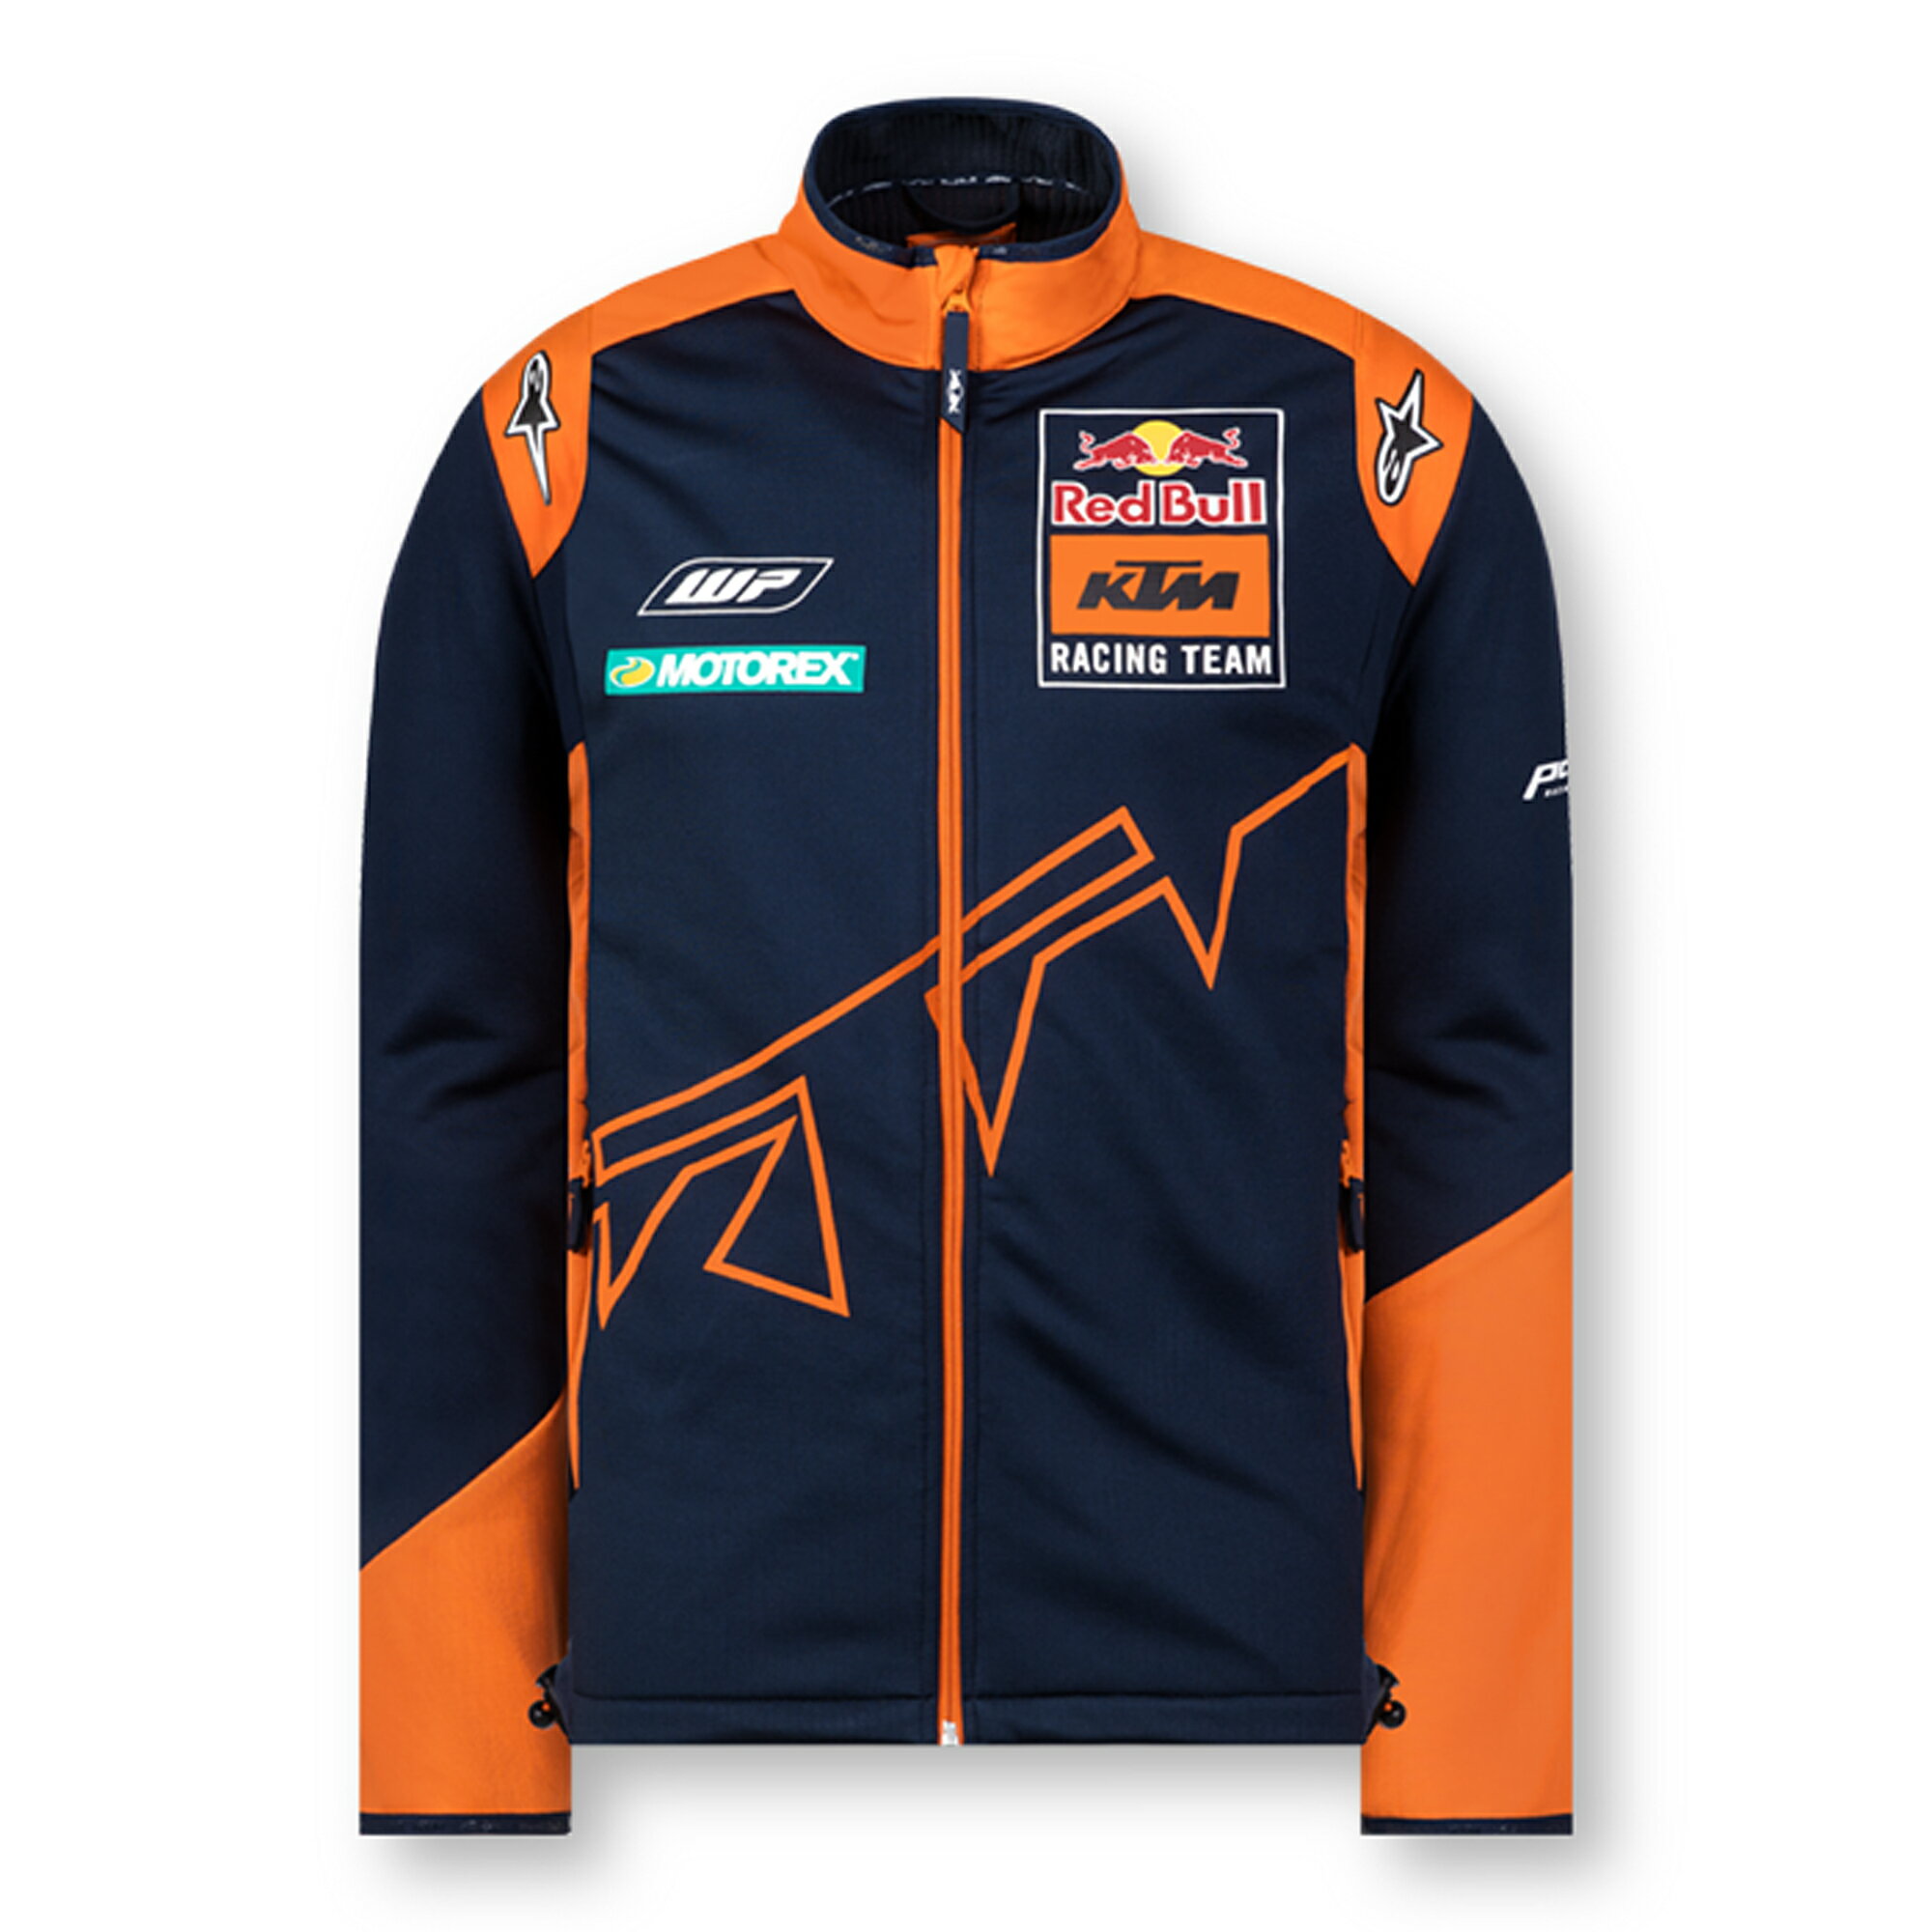 ★送料無料★Red Bull KTM Racing Team Softshell Fleece Jacket レッドブルー ソフトシェル フリース ジャケット コート アウター